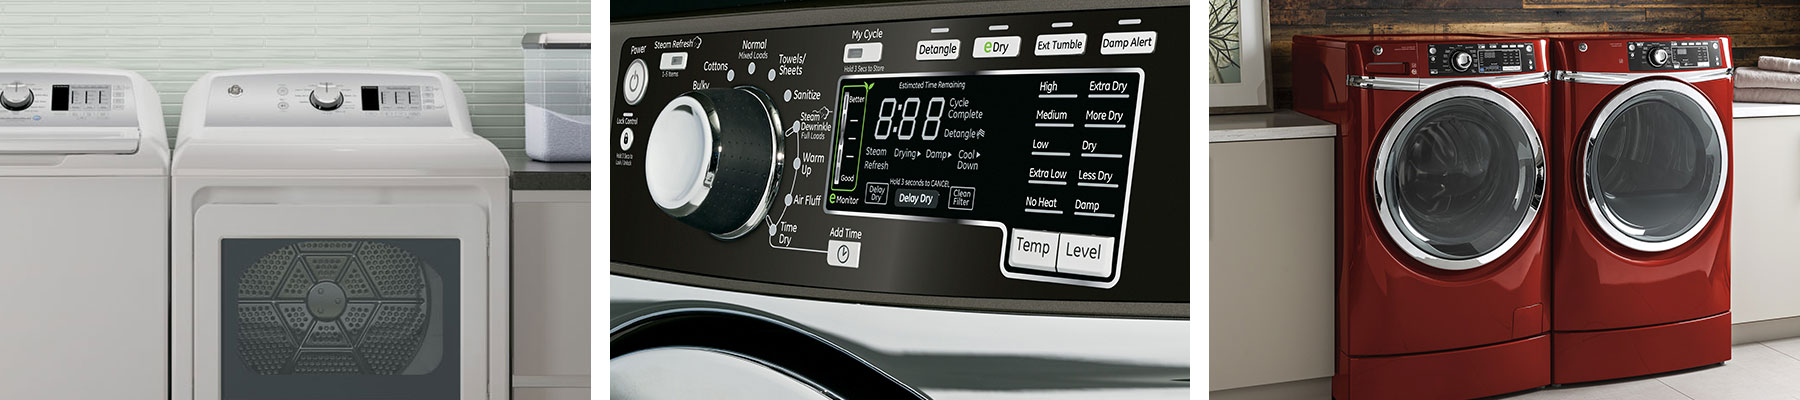 Services - GE Appliances Laundry